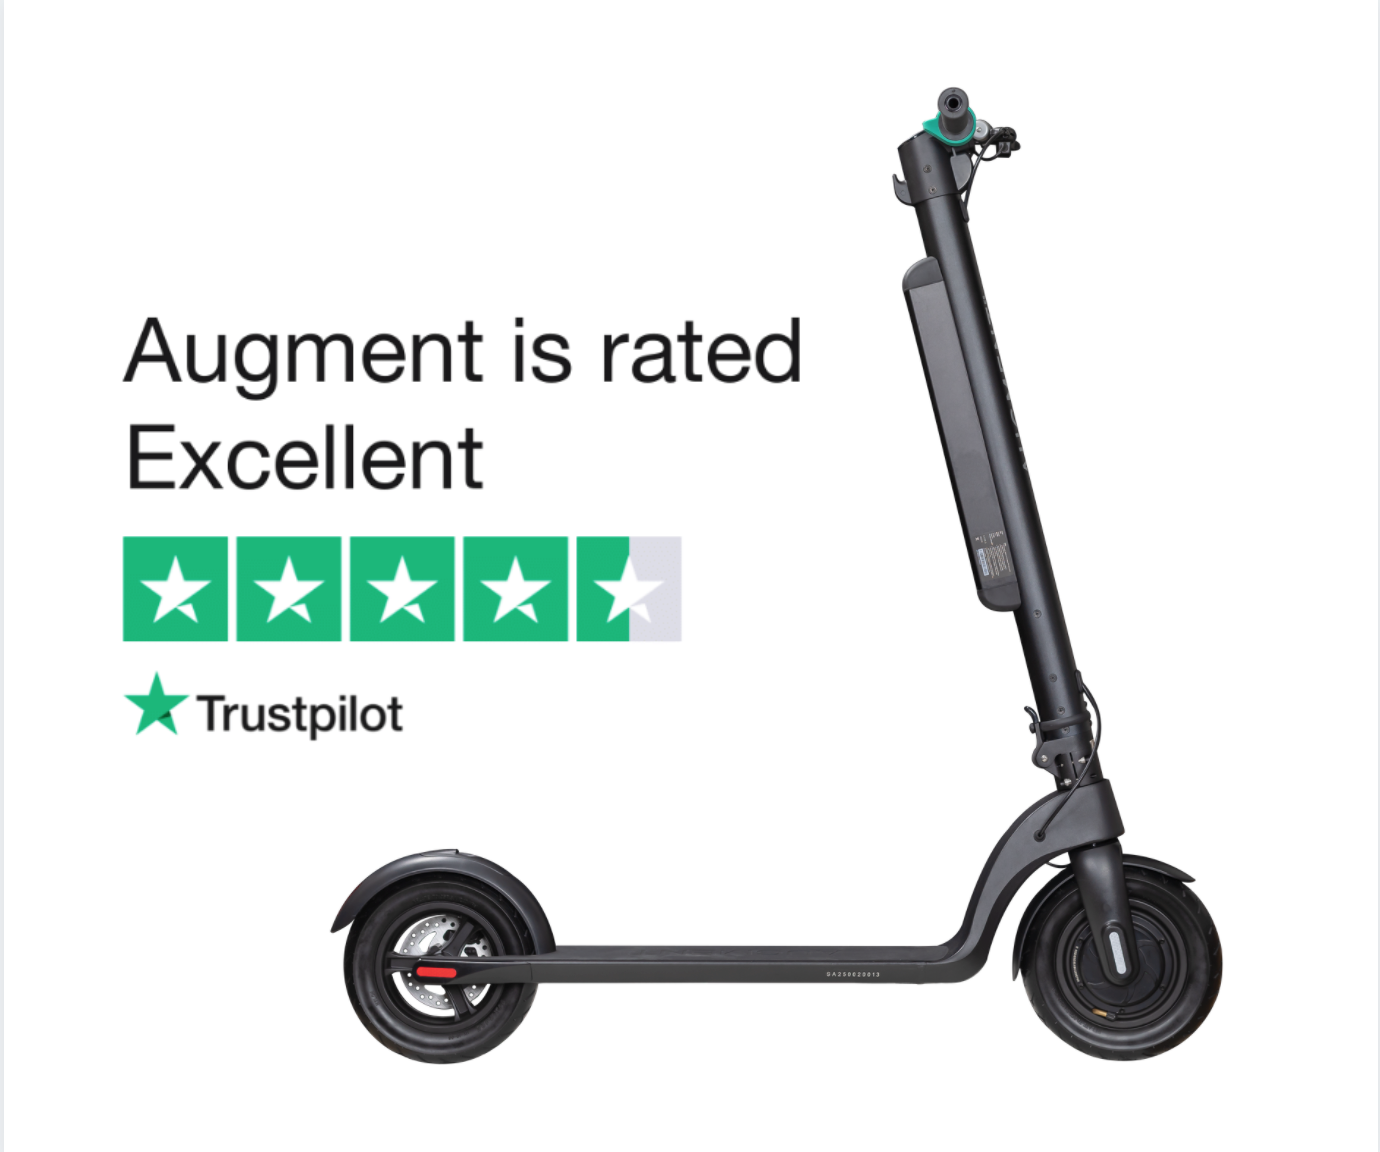 Il punteggio Trustpilot per Augment.Eco è 4,5 